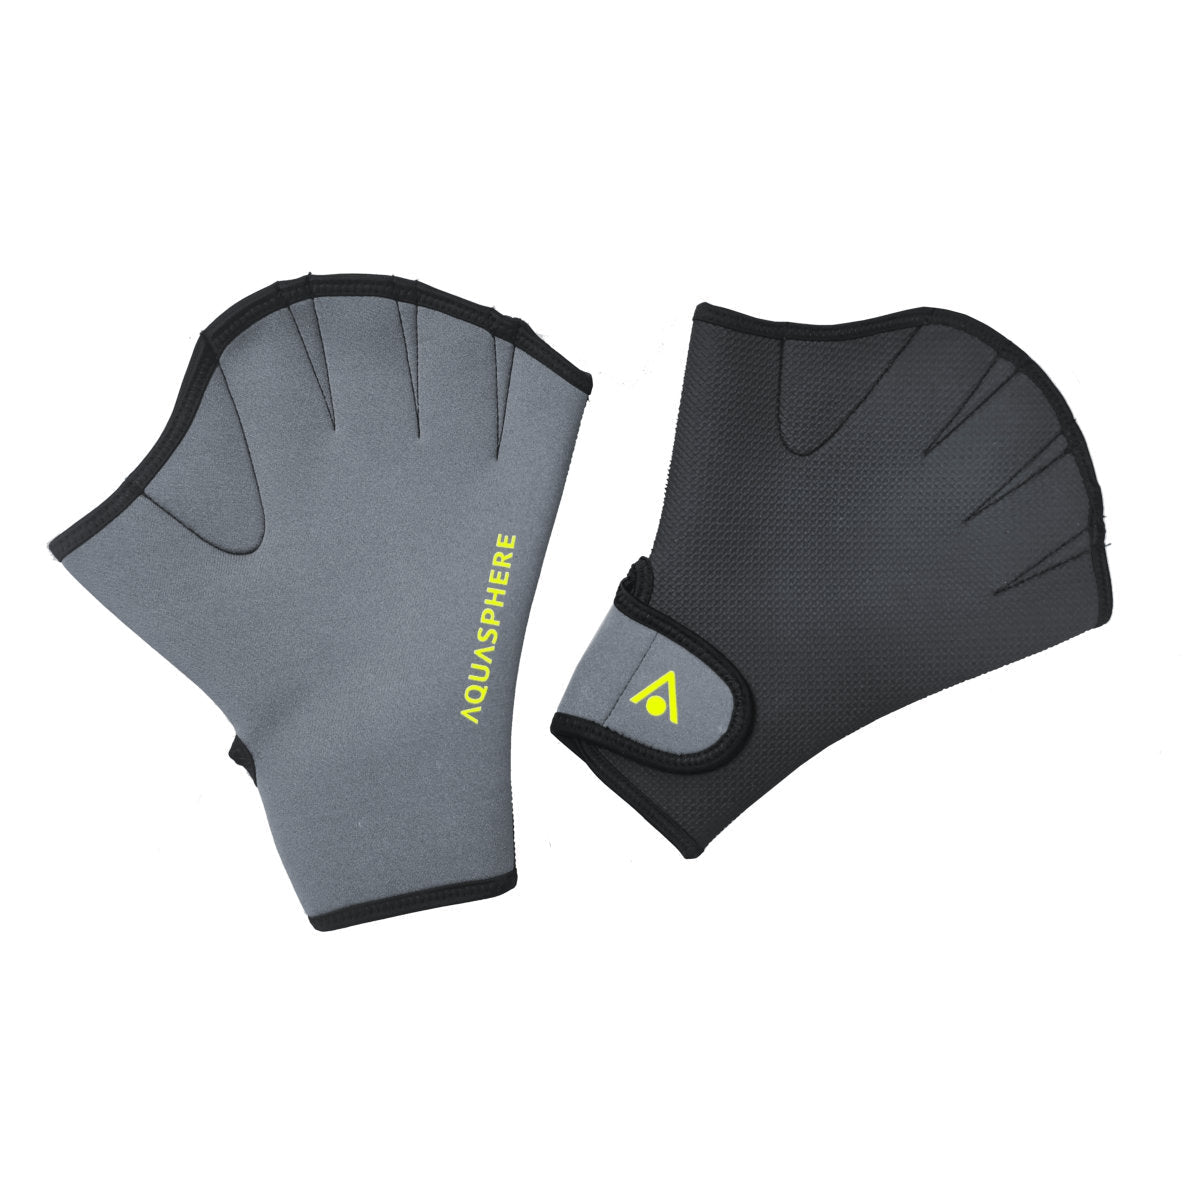 Aquasphere Swim Gloves